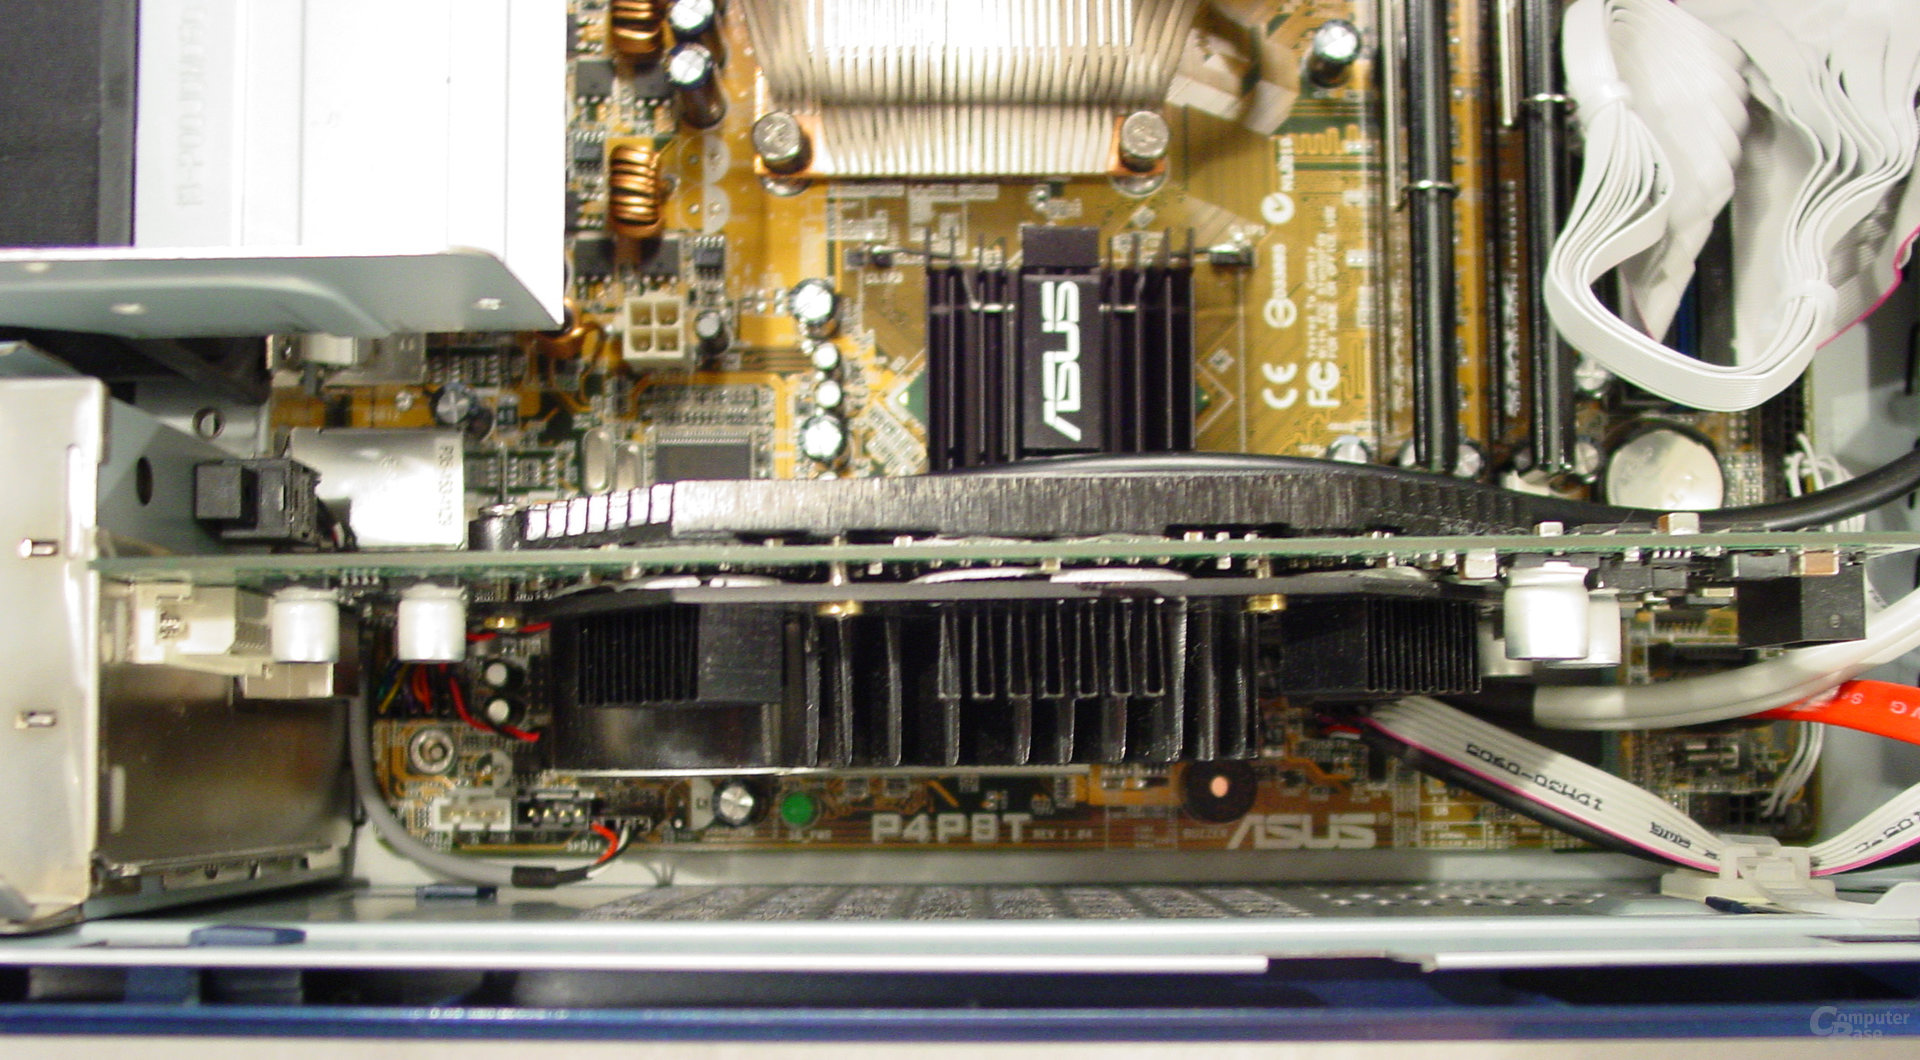 Asus S-presso S1-P111 Deluxe - Inkompatibilität - GeForce FX 5900 Ultra, bei der das Gehäuse nicht mehr geschlossen werden kann